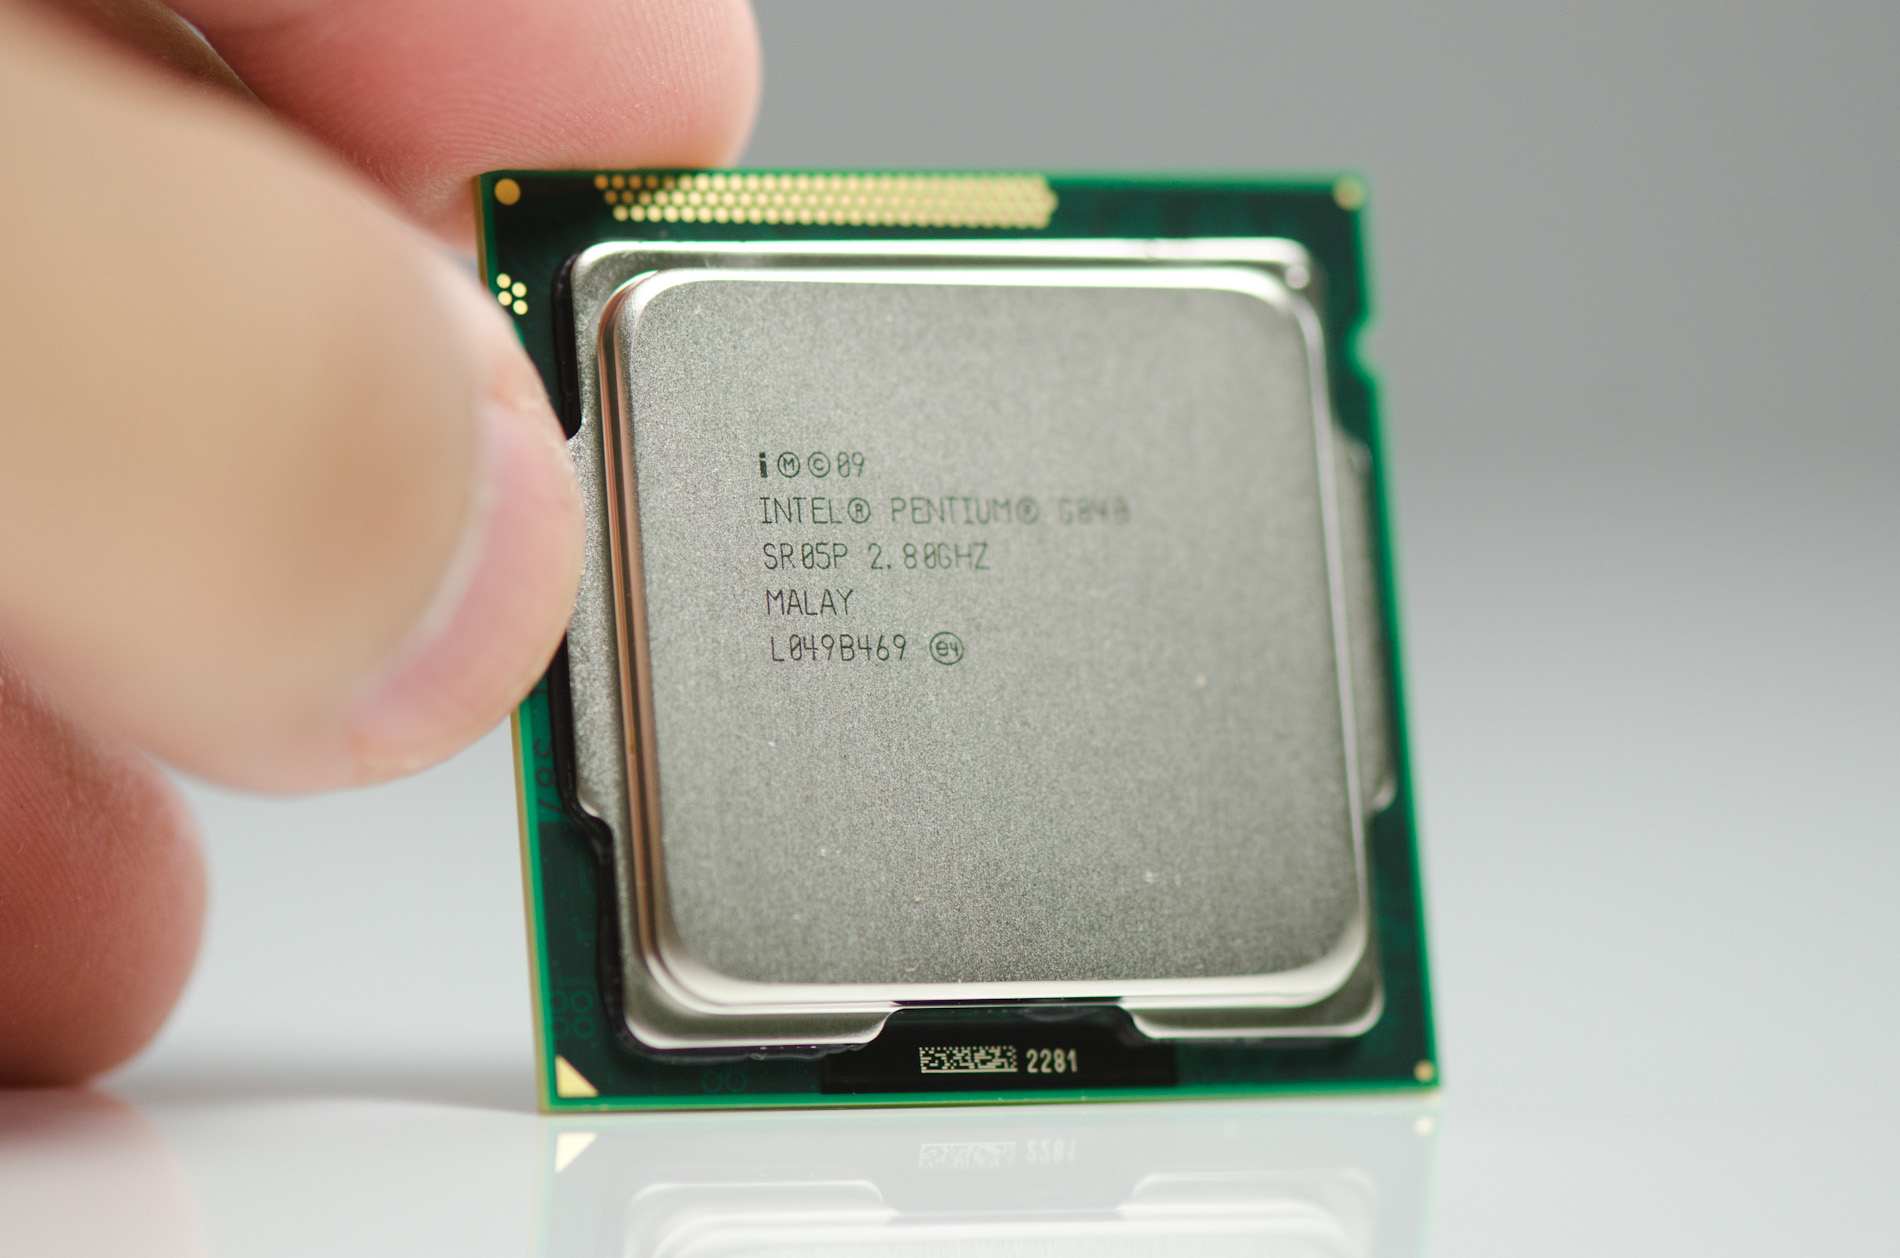 Интел 620. Процессор Интел g620. Сокеты процессора Intel Pentium g620. Intel(r) Pentium(r) CPU g620. Intel Pentium g850.